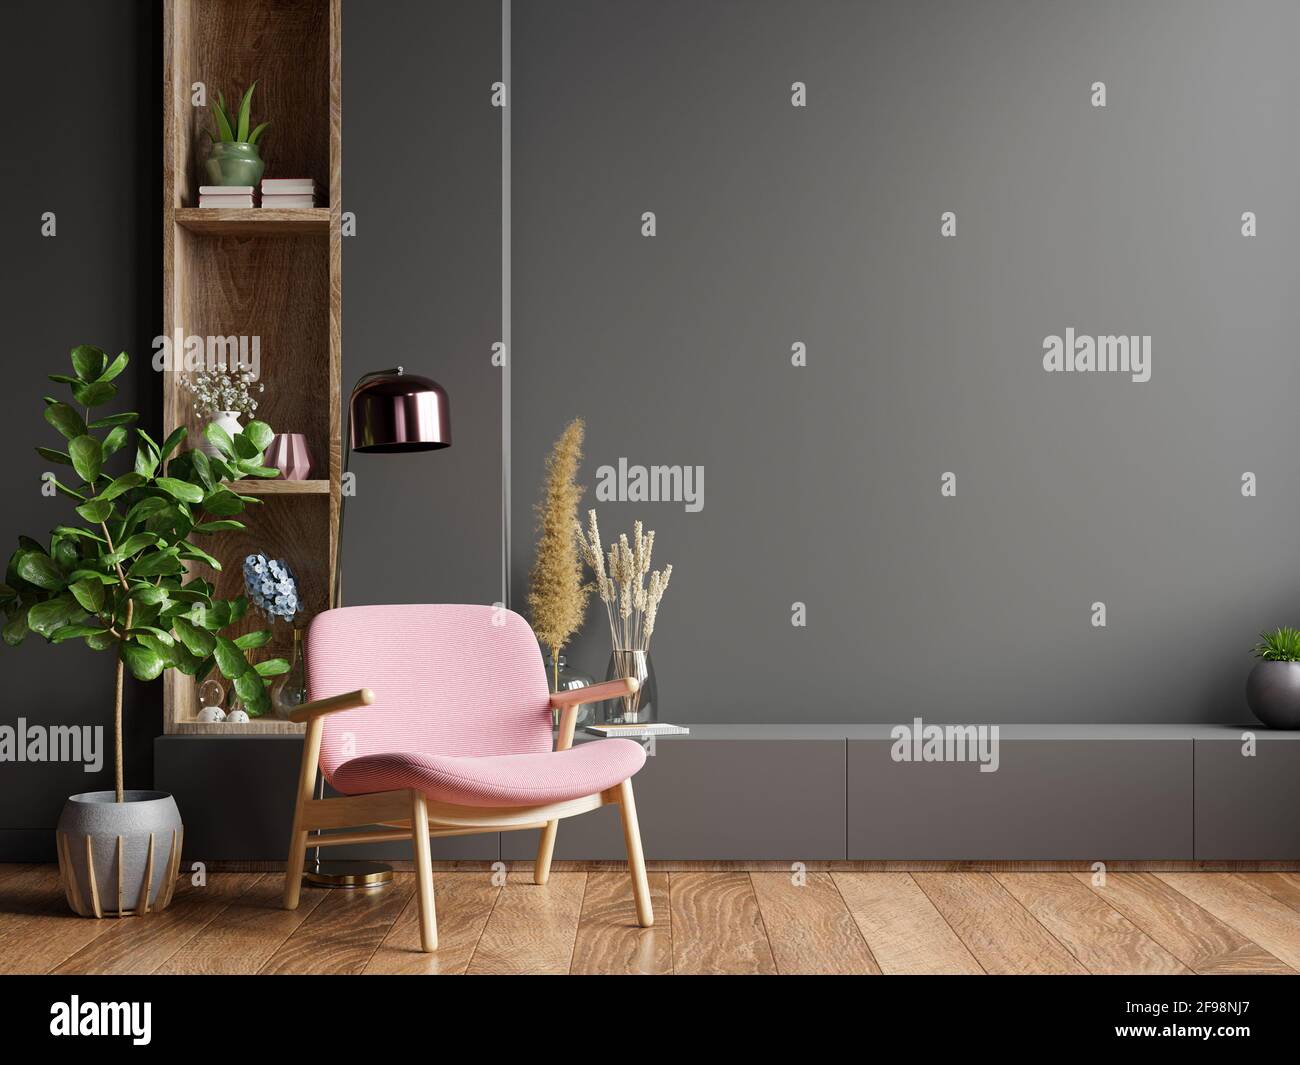 Intérieur coloré avec un fauteuil rose sur un mur sombre vide Arrière-plan,rendu 3D Banque D'Images